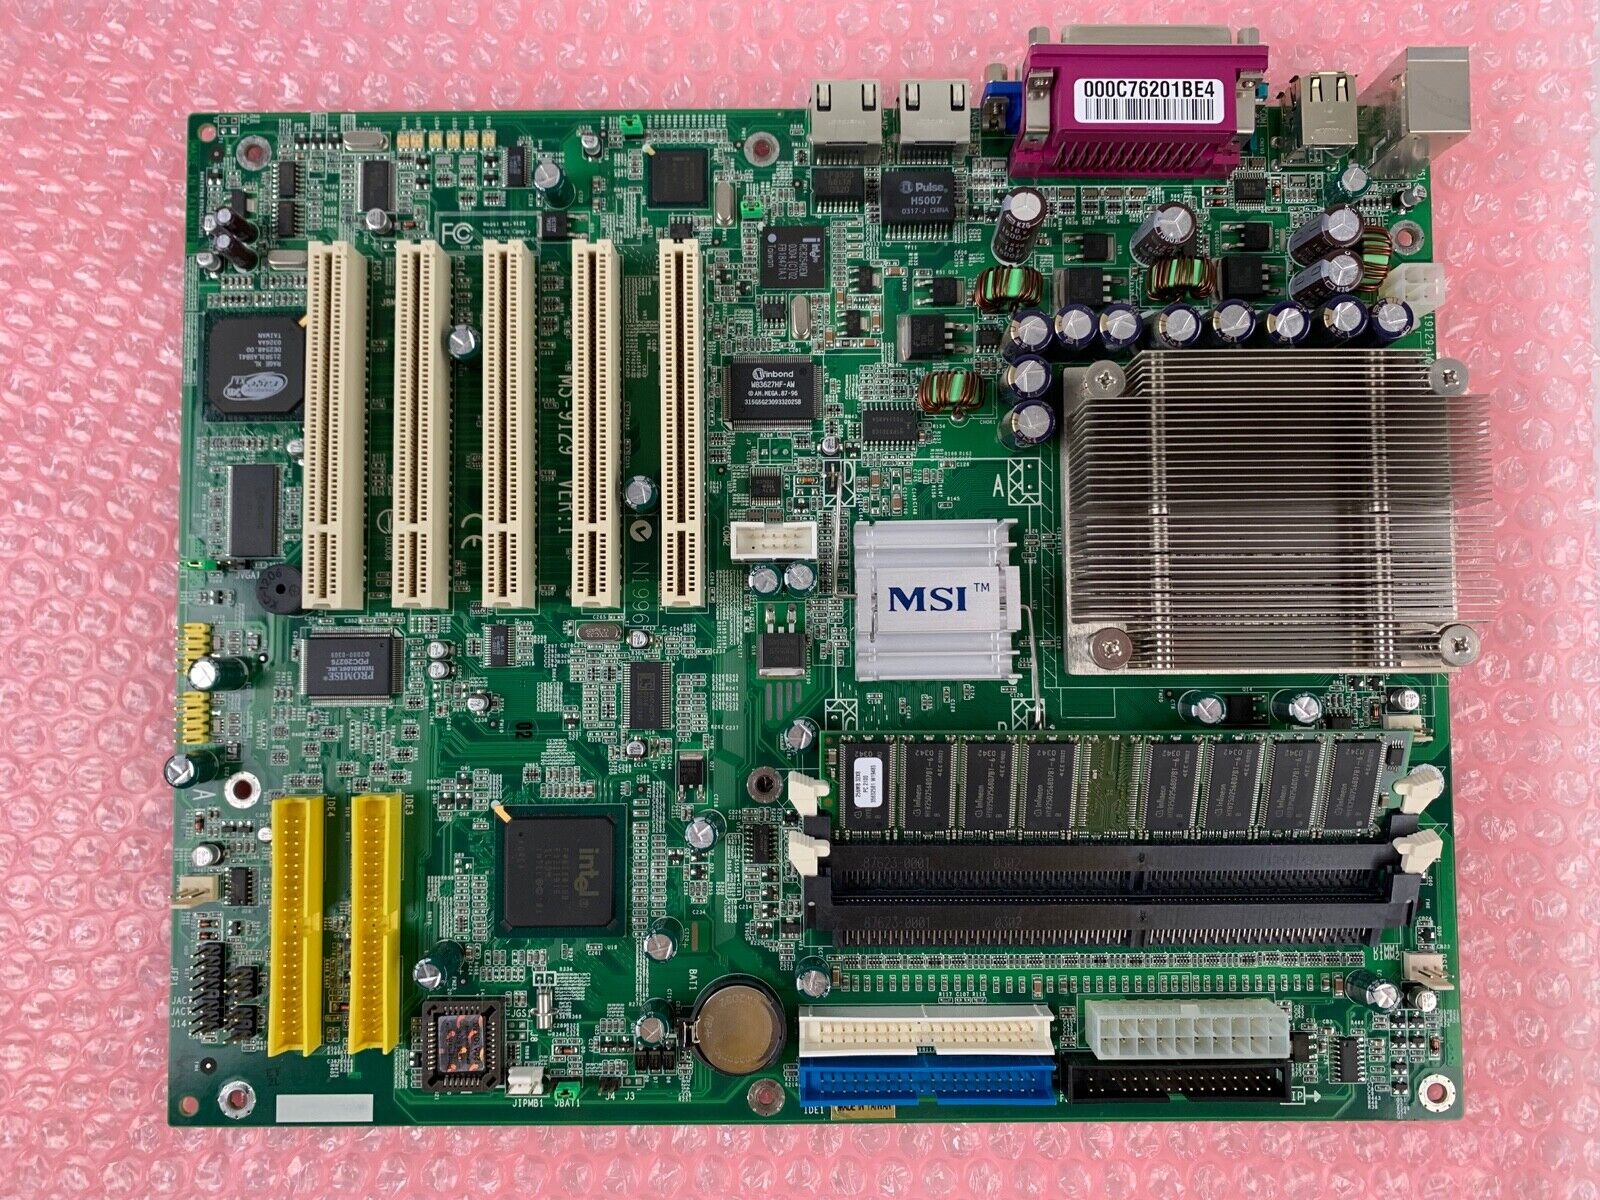 MSI MS-9129 Server Workstation Motherboard Intel Celeron 1.7GHz CPU 256MB RAM